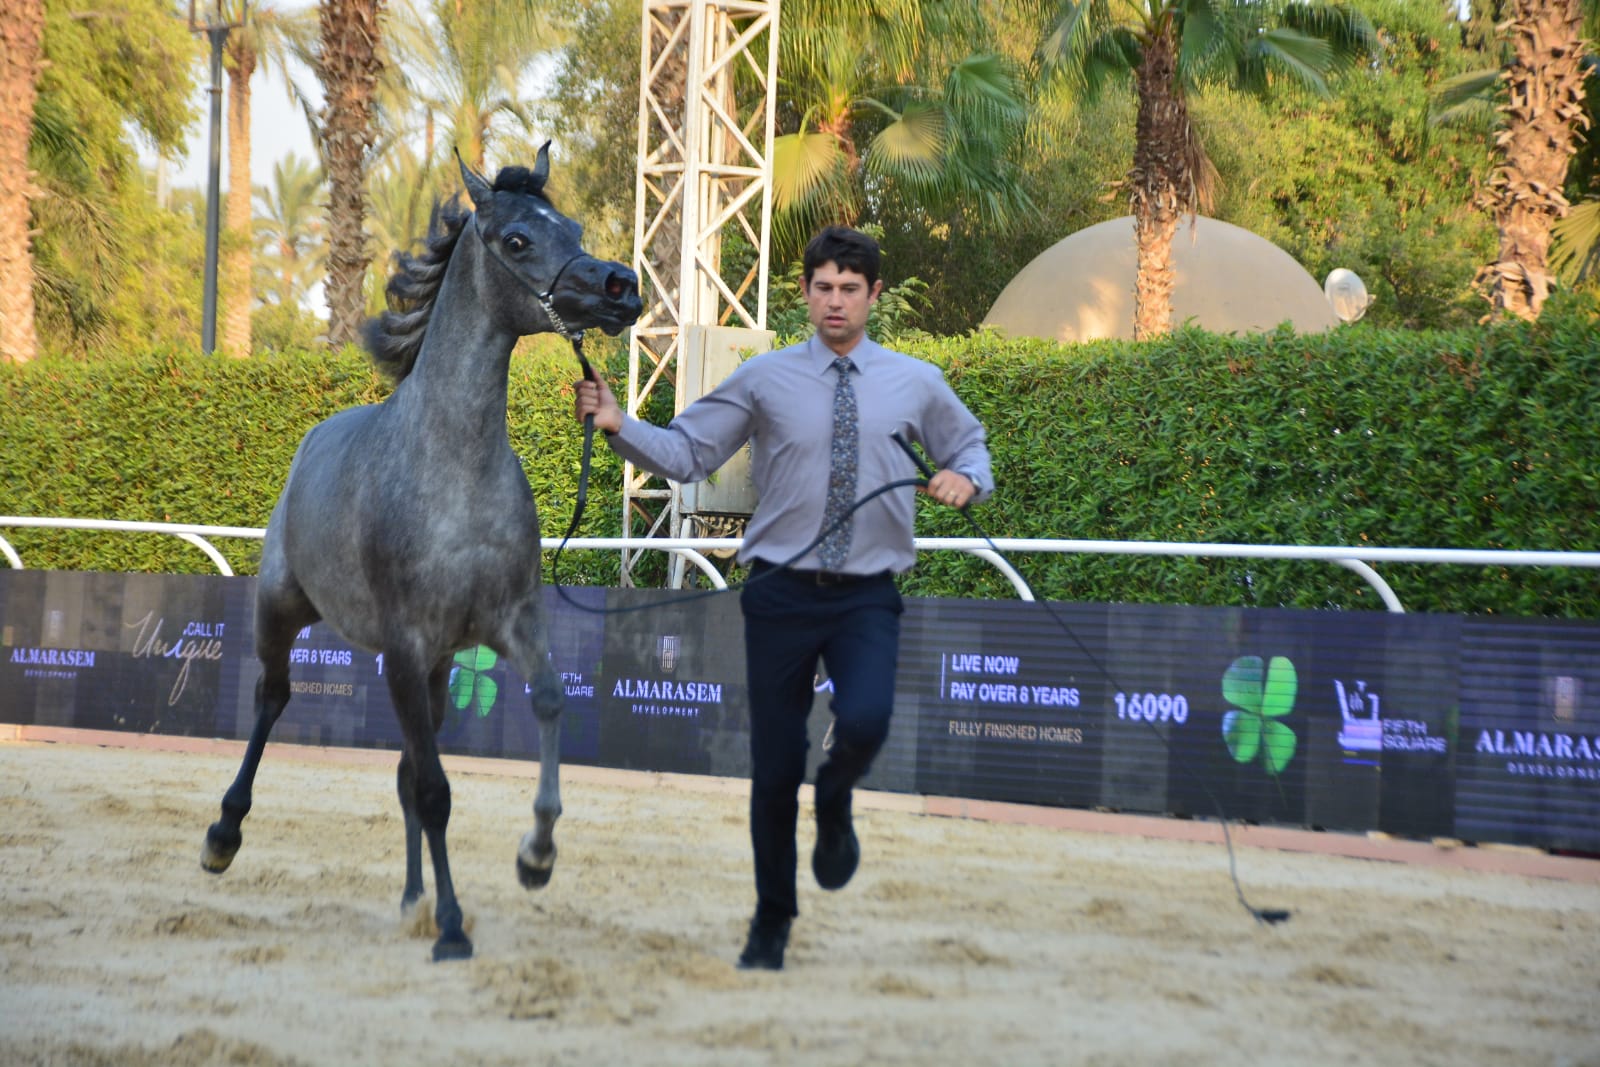 شاهد.. نتائج كلاس ١ مجموعة "ب" في بطولة مراسم رباب للخيول العربية المصرية الأصيلة